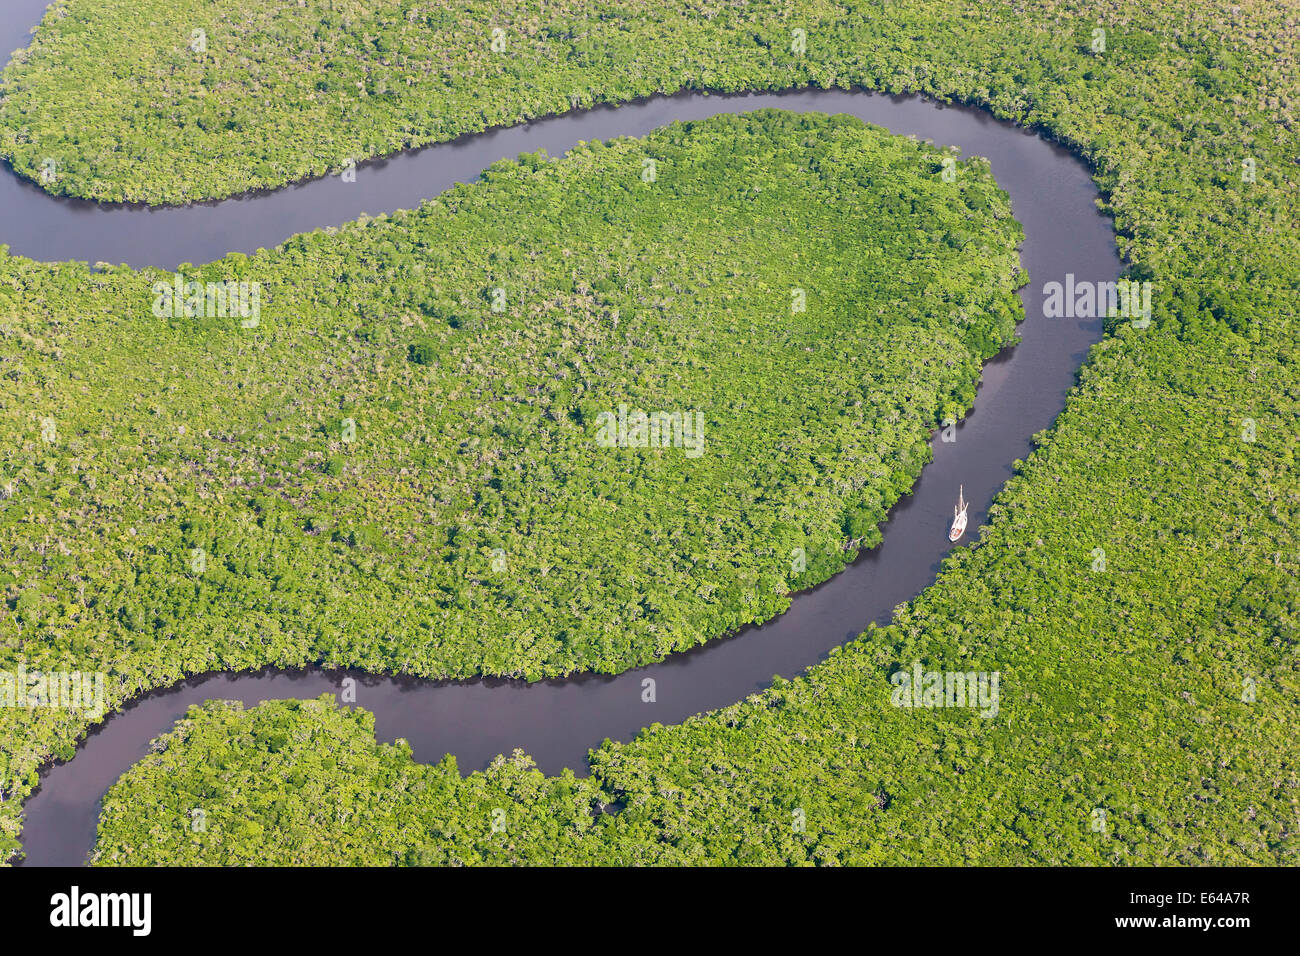 Bateau à voile & vue aérienne de la forêt tropicale de Daintree, rivière, parc national de Daintree, Queensland Australie Banque D'Images